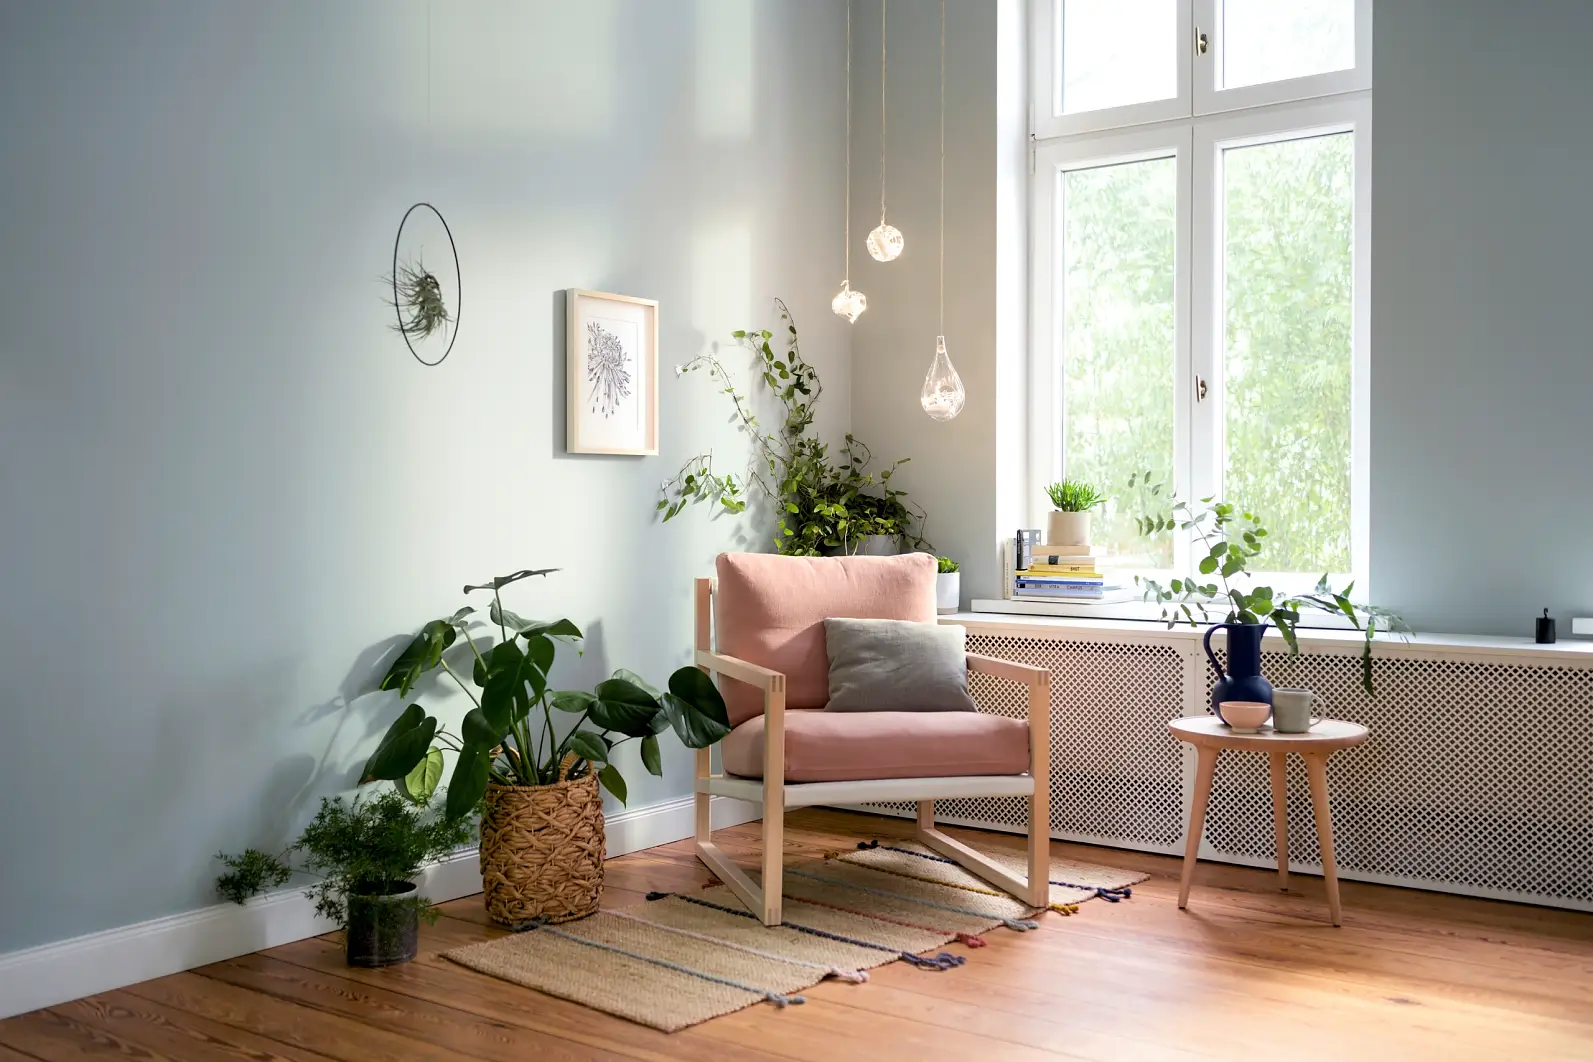 Wohnzimmer-Highlights – Teaser: Wohnzimmerecke mit Sessel, Pflanzen, Licht